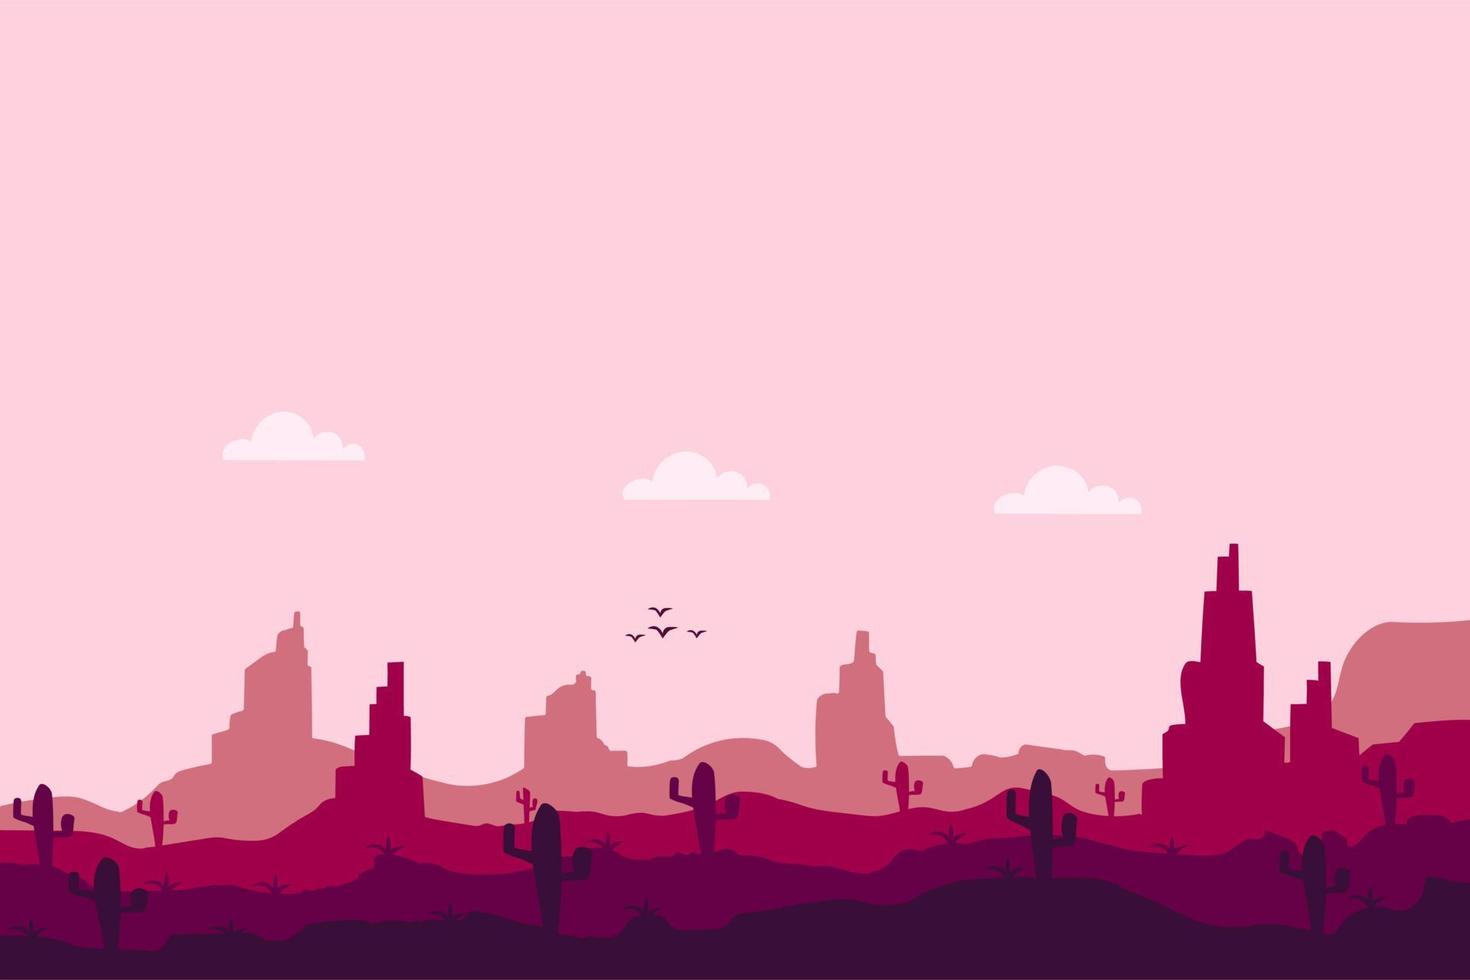 paysage désertique avec cactus et collines silhouettes fond illustration vectorielle vecteur